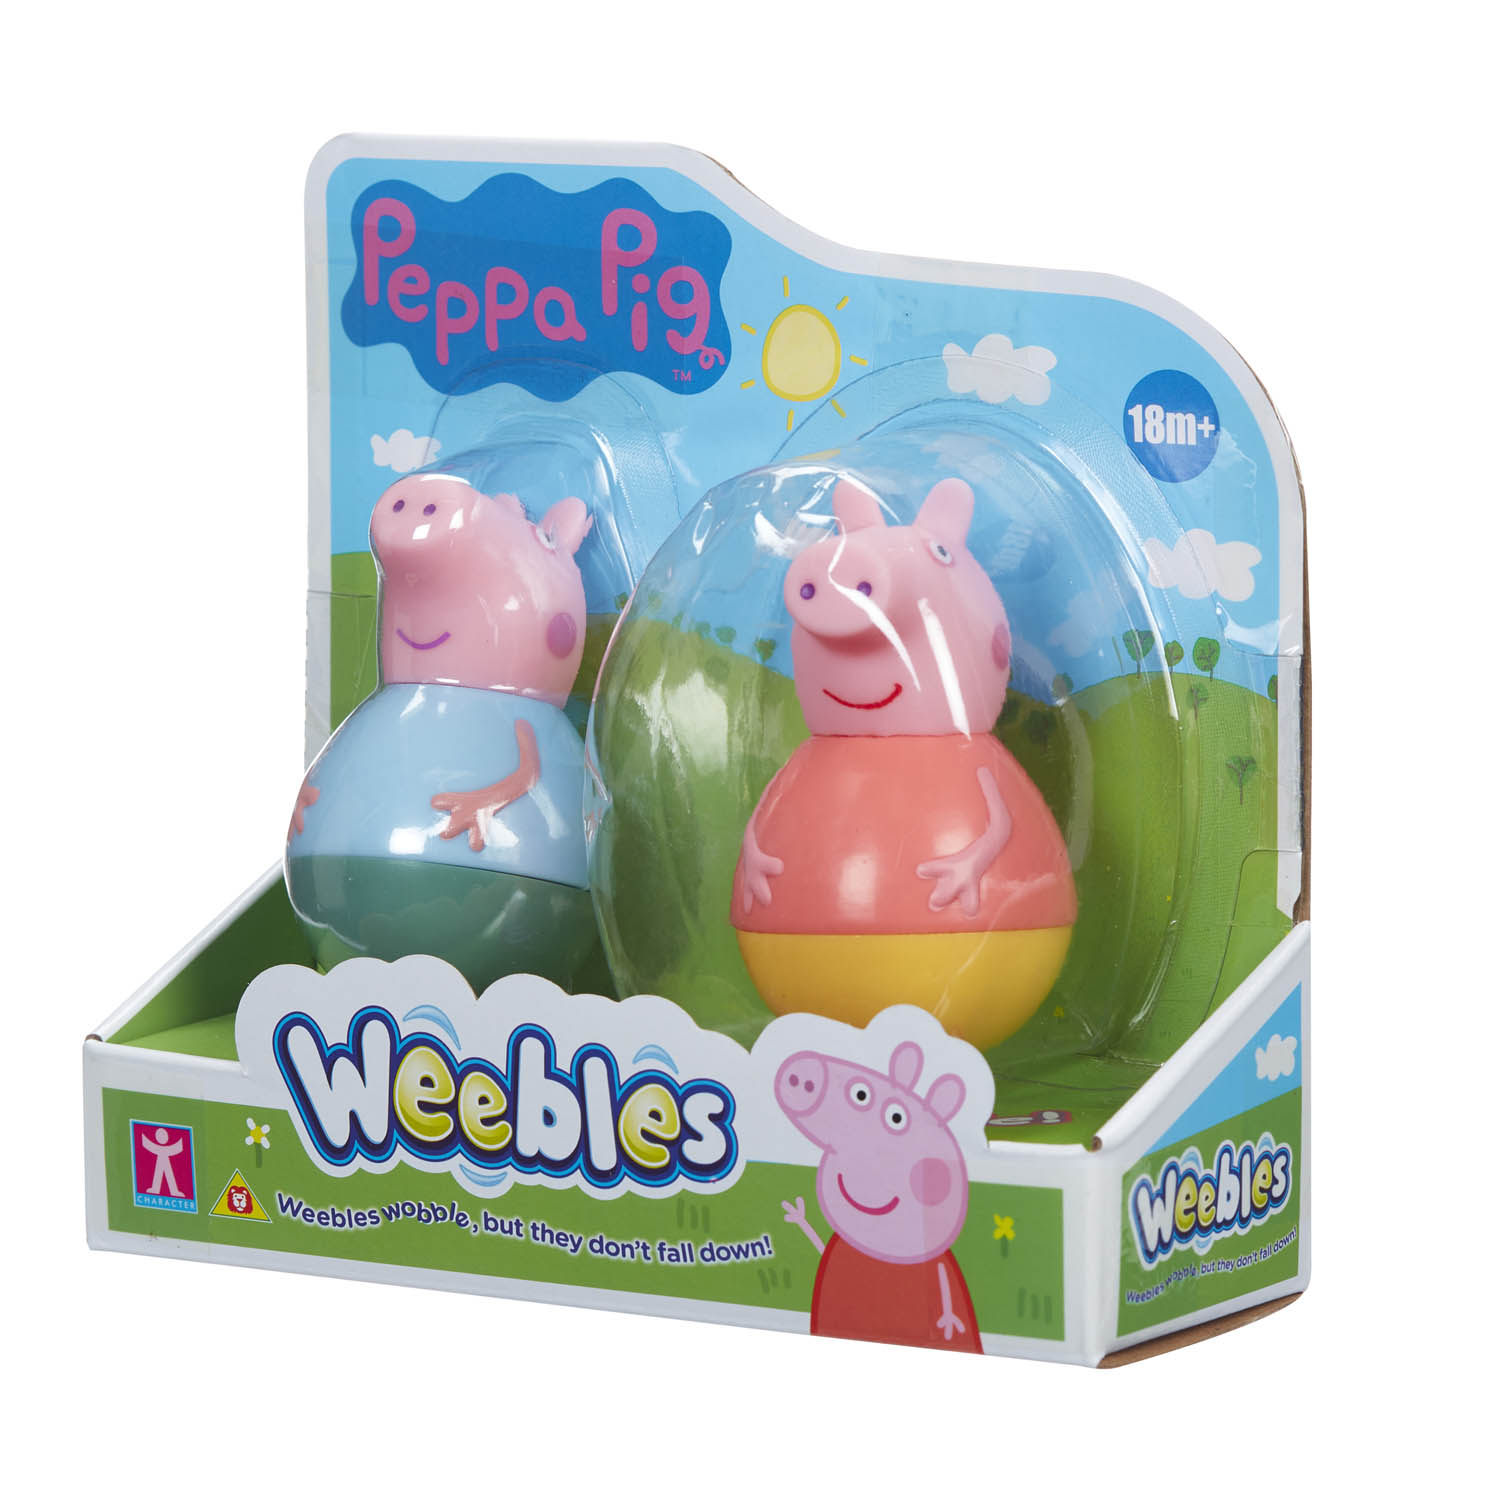 Peppa Pig - Pack com 2 Weebles de 8cm - Peppa e George